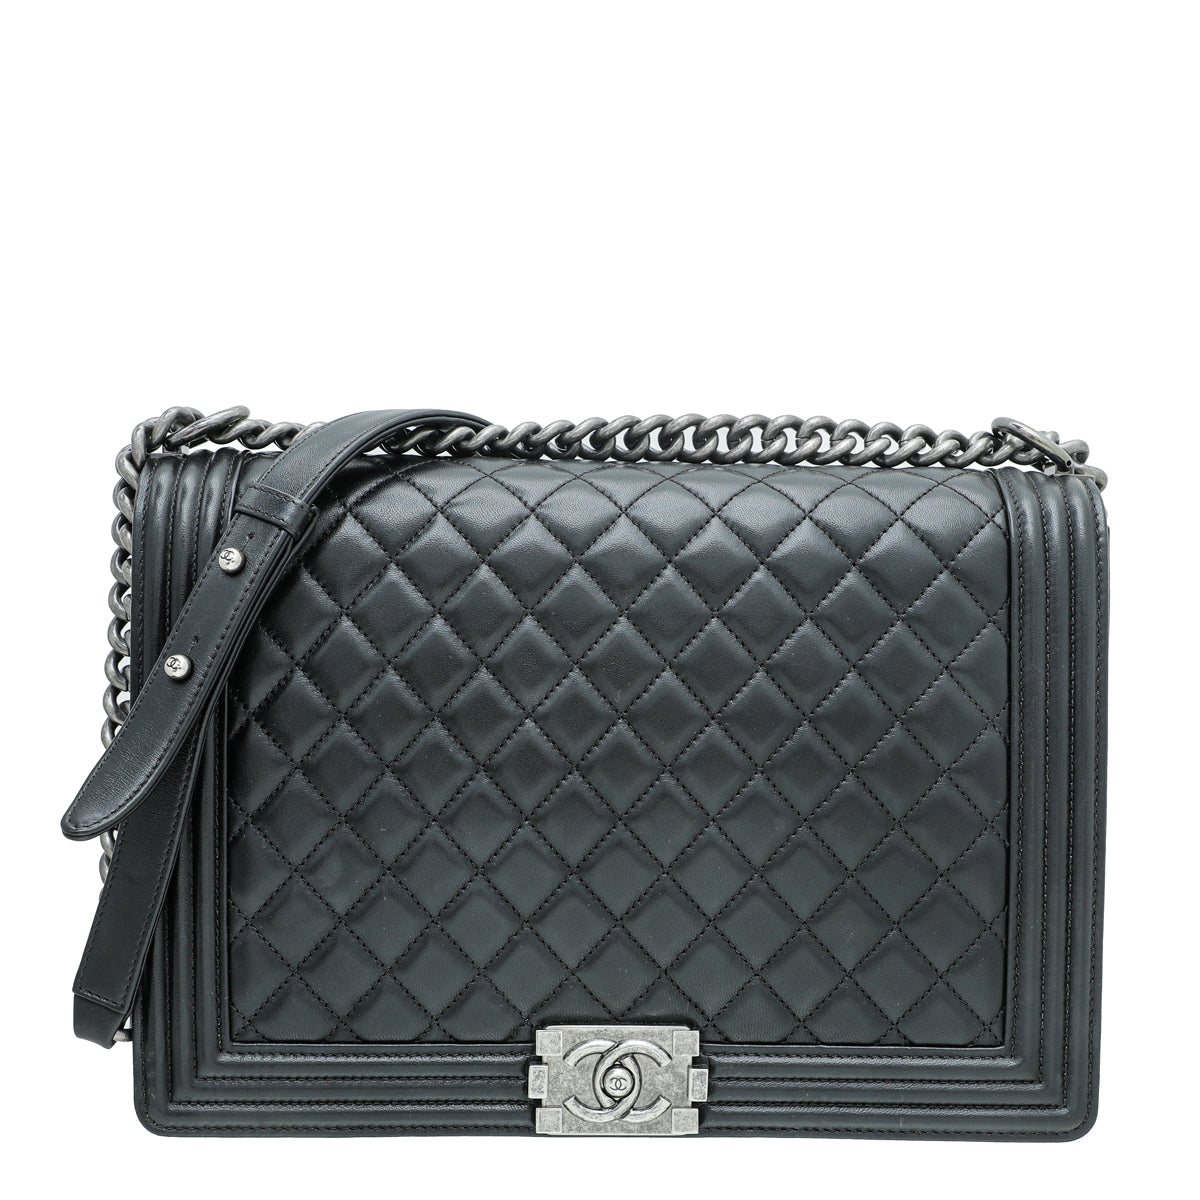 Chanel Classic Flap Vs Boy Bag Comparison Review